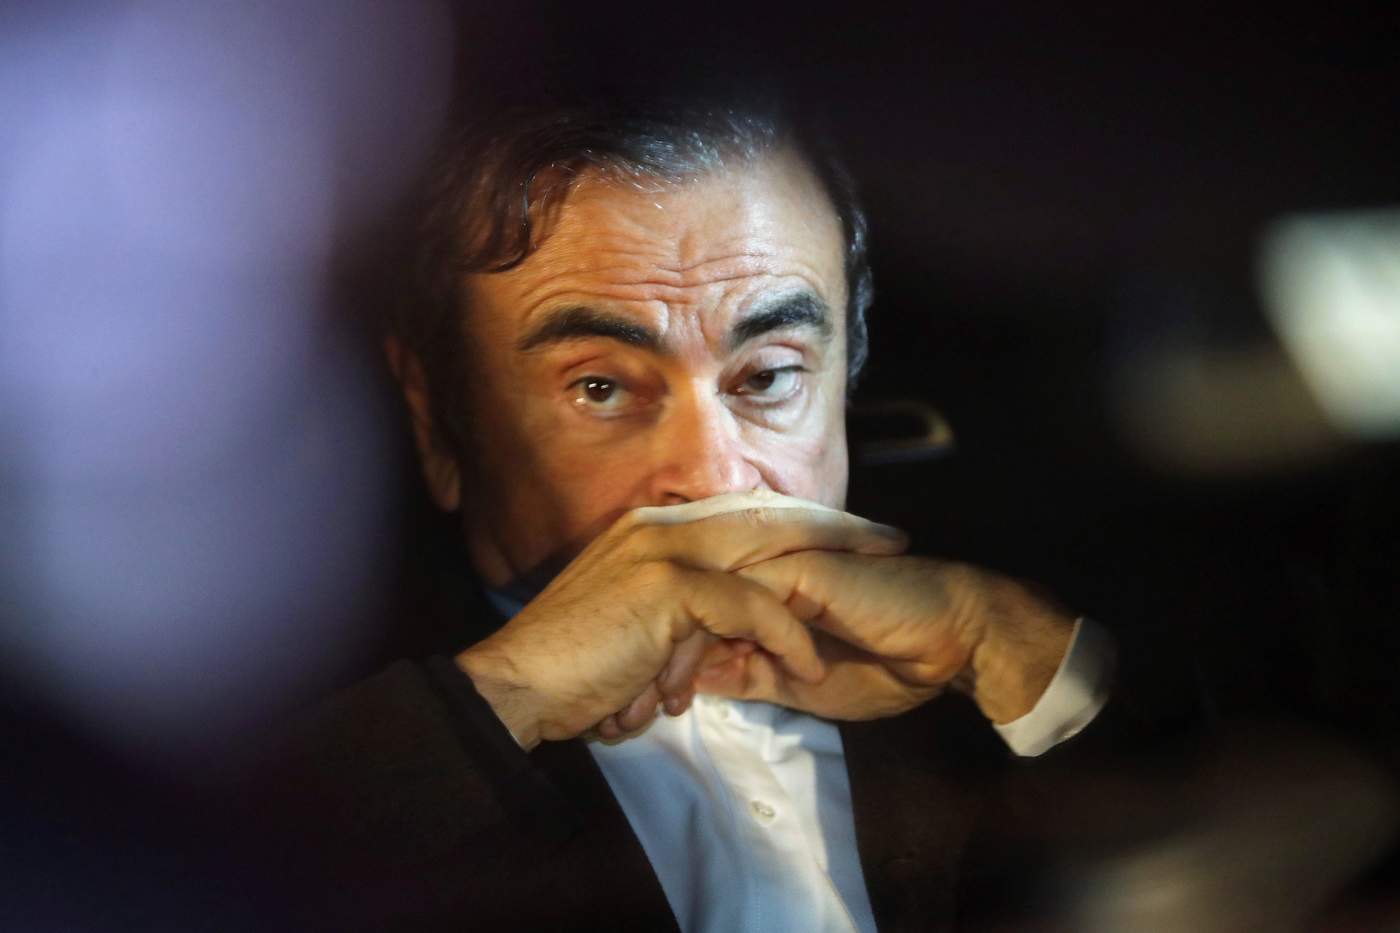 Expresidente de Nissan queda libre tras pagar fianza